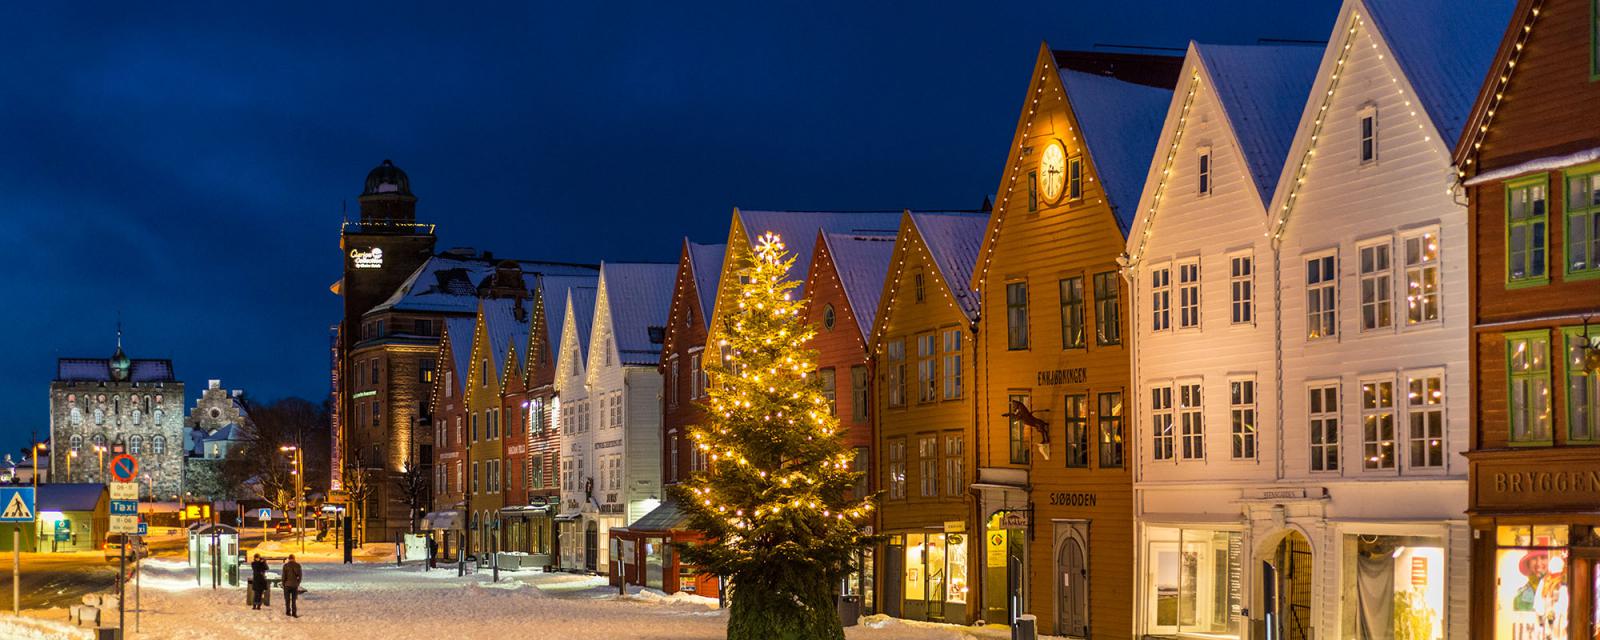 Tips voor stedentrip tijdens kerst naar Bergen in Noorwegen 